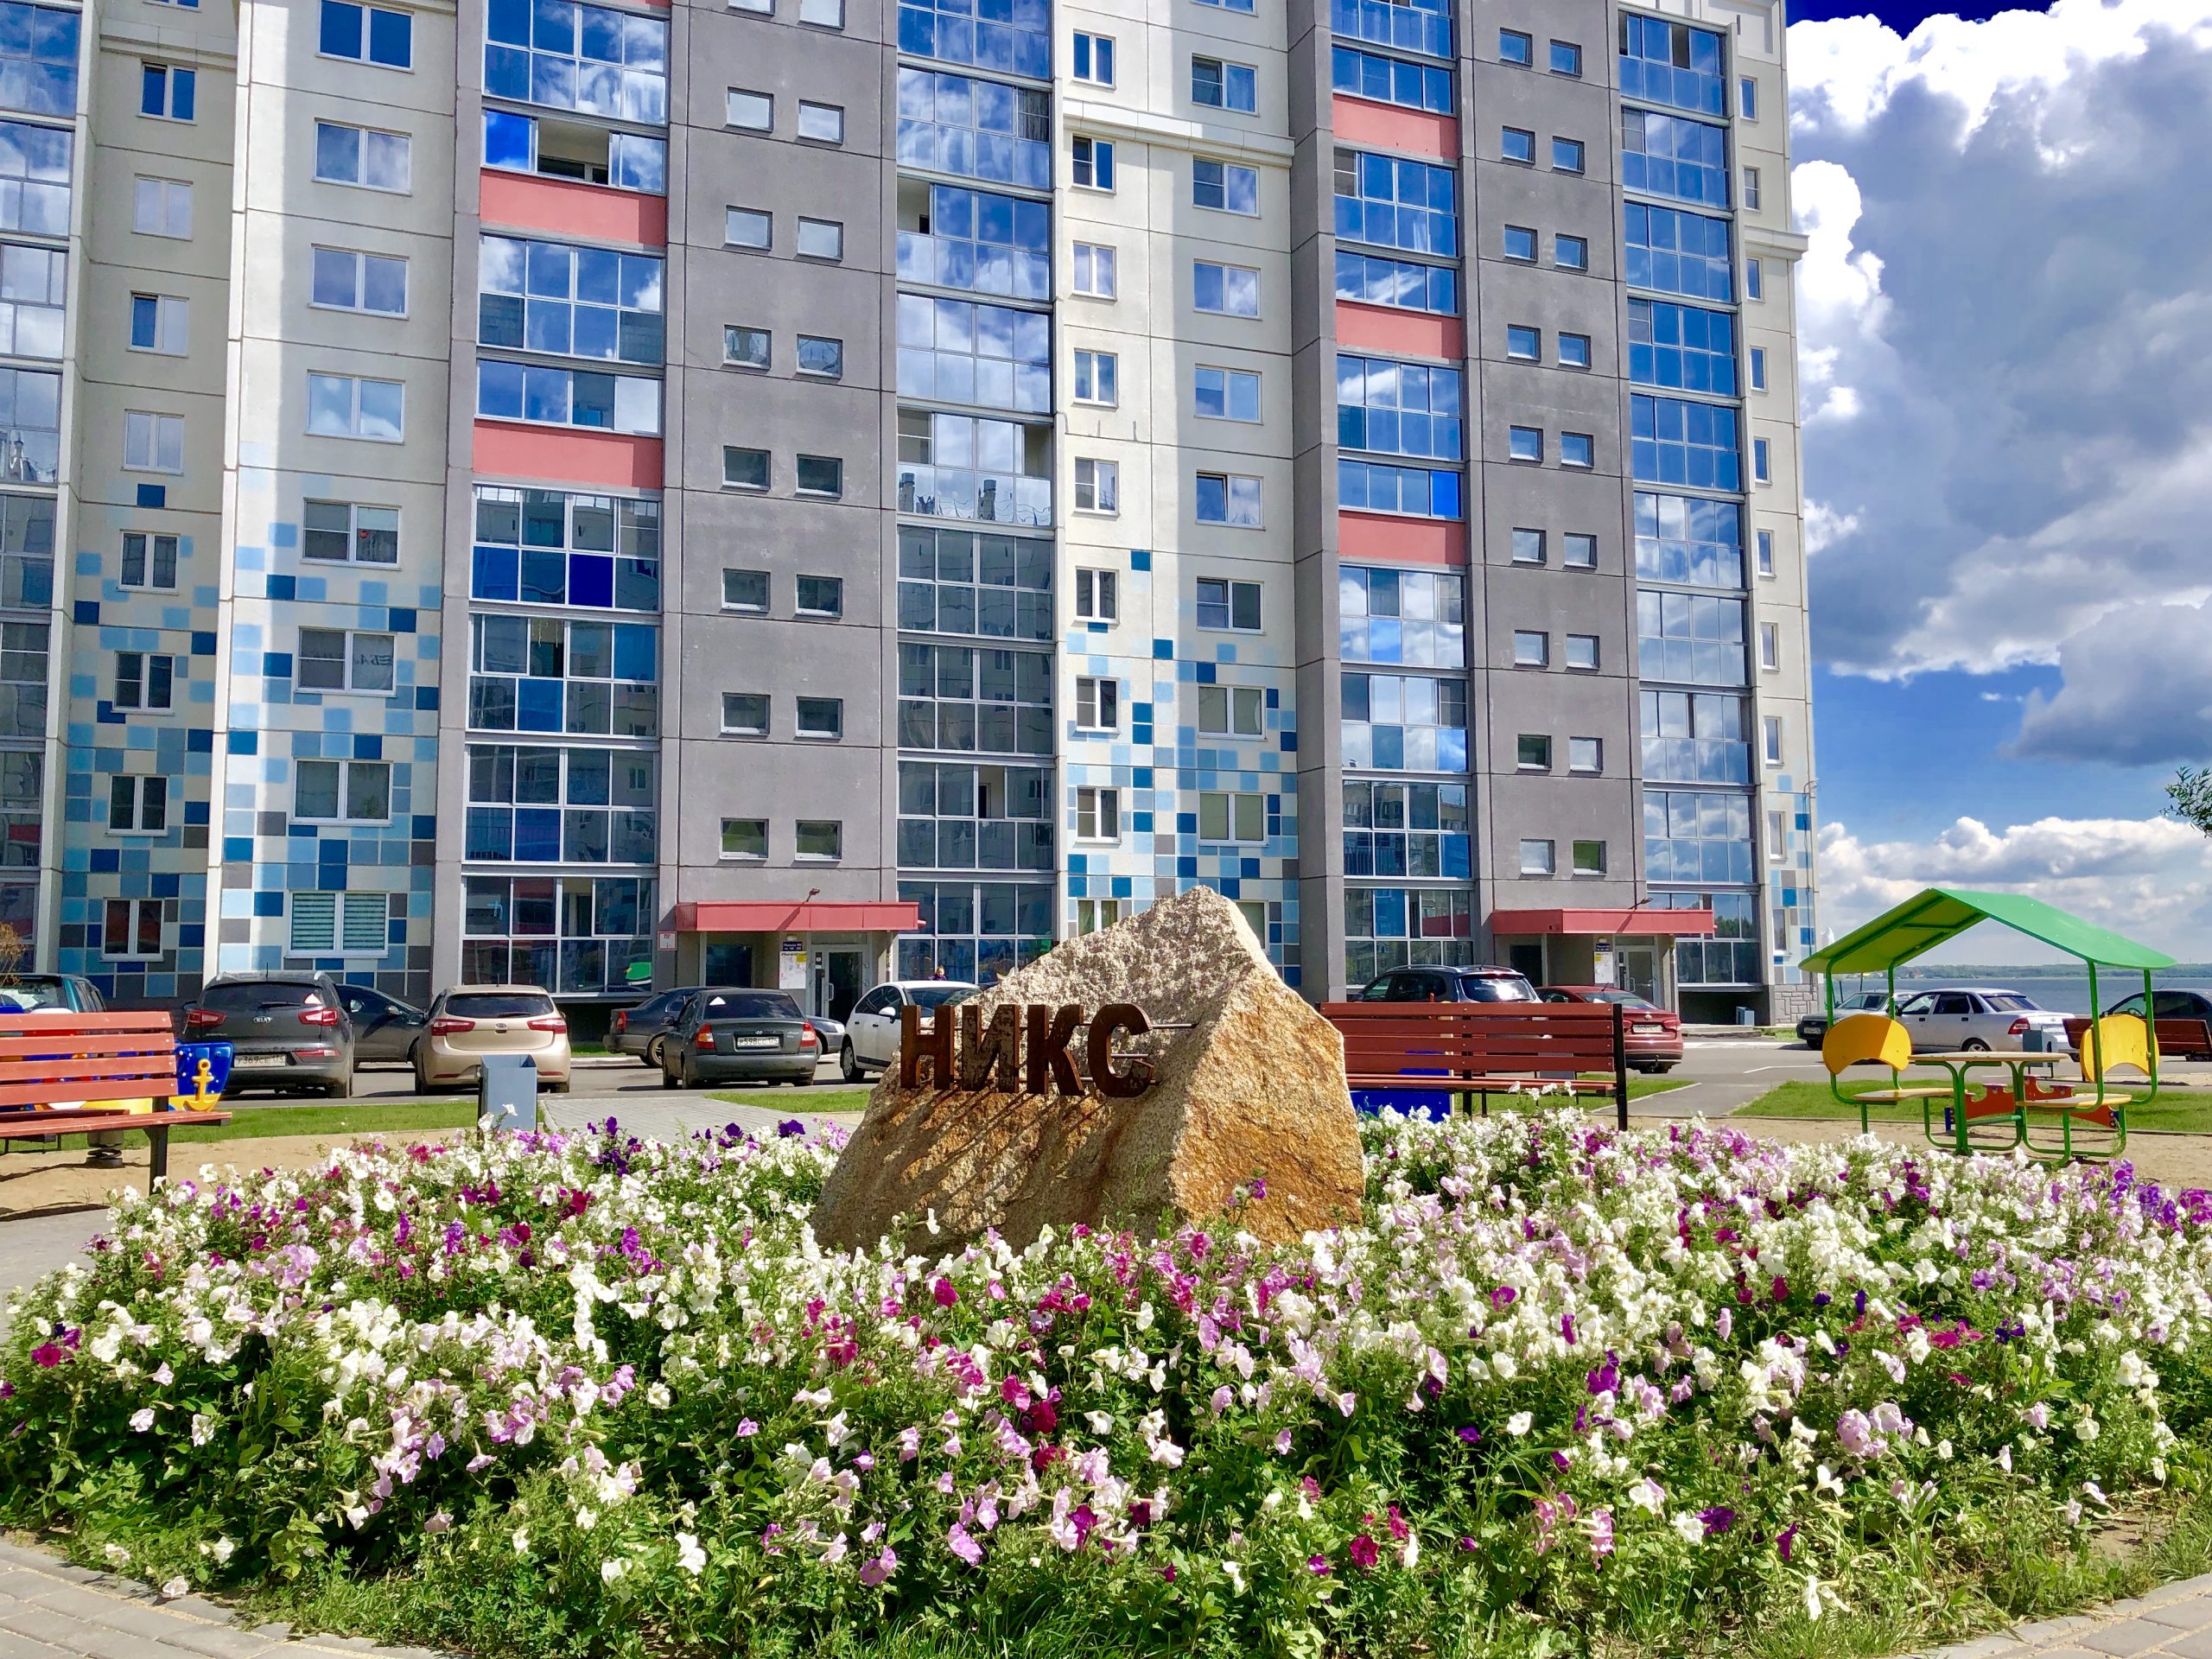 Однокомнатная квартира на ул. Новороссийская, 103 (38кв.м) до 2 гостей